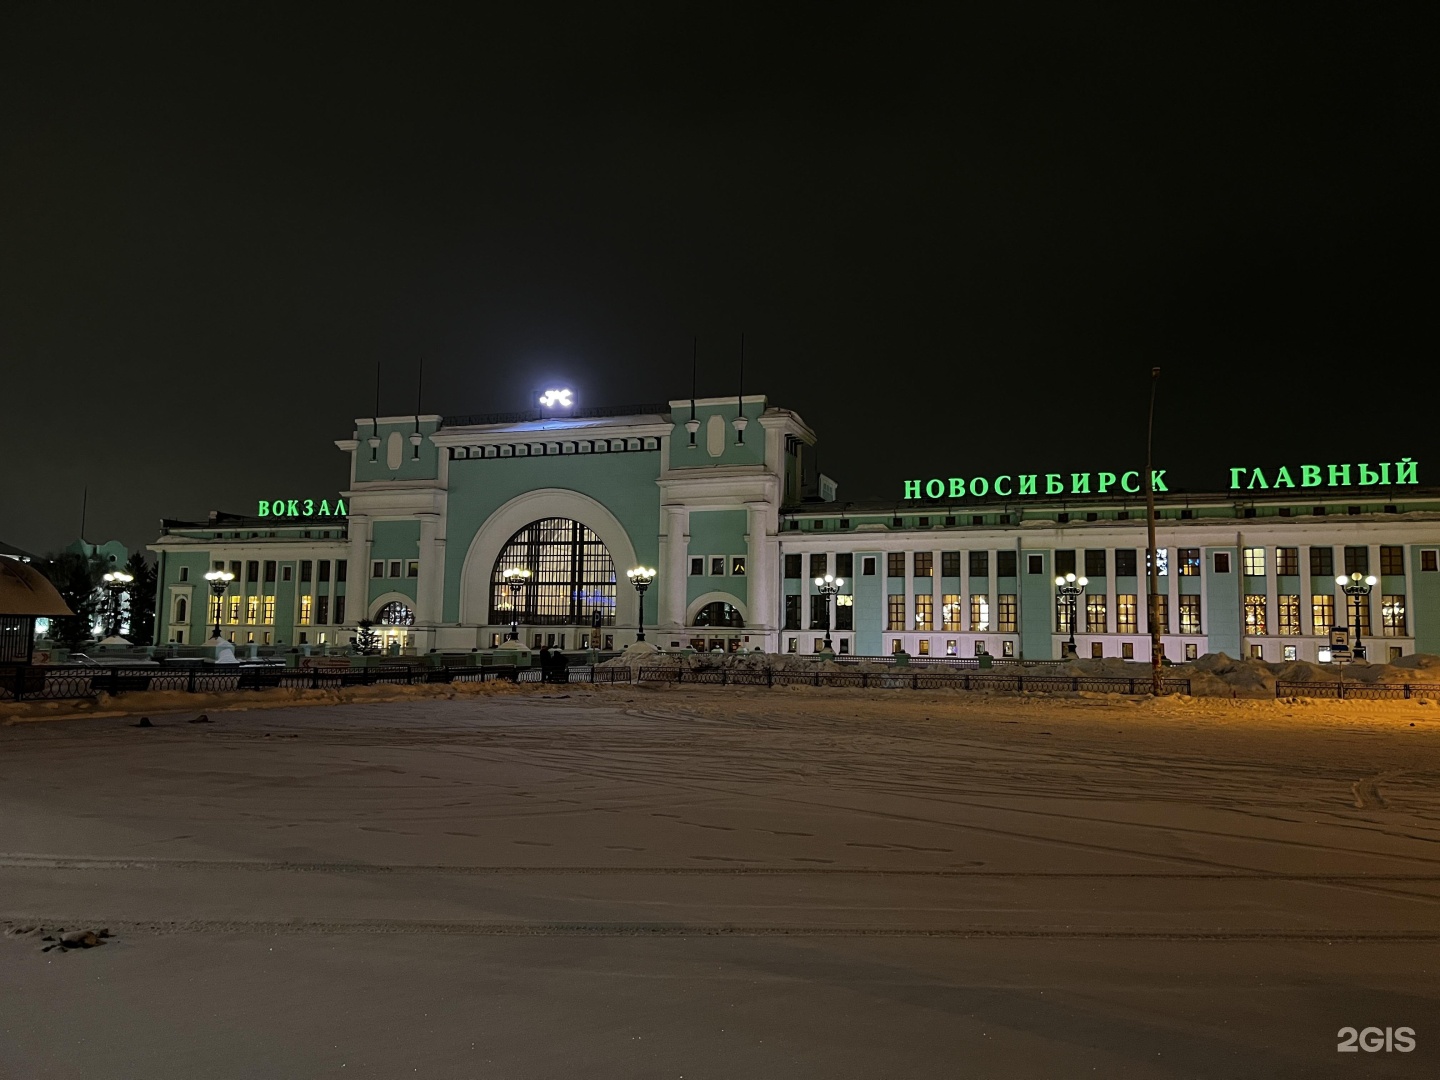 Пригородный вокзал Новосибирск. Новосибирск главный. ЖД вокзал Новосибирск фото. Вокзал Новосибирска картина.